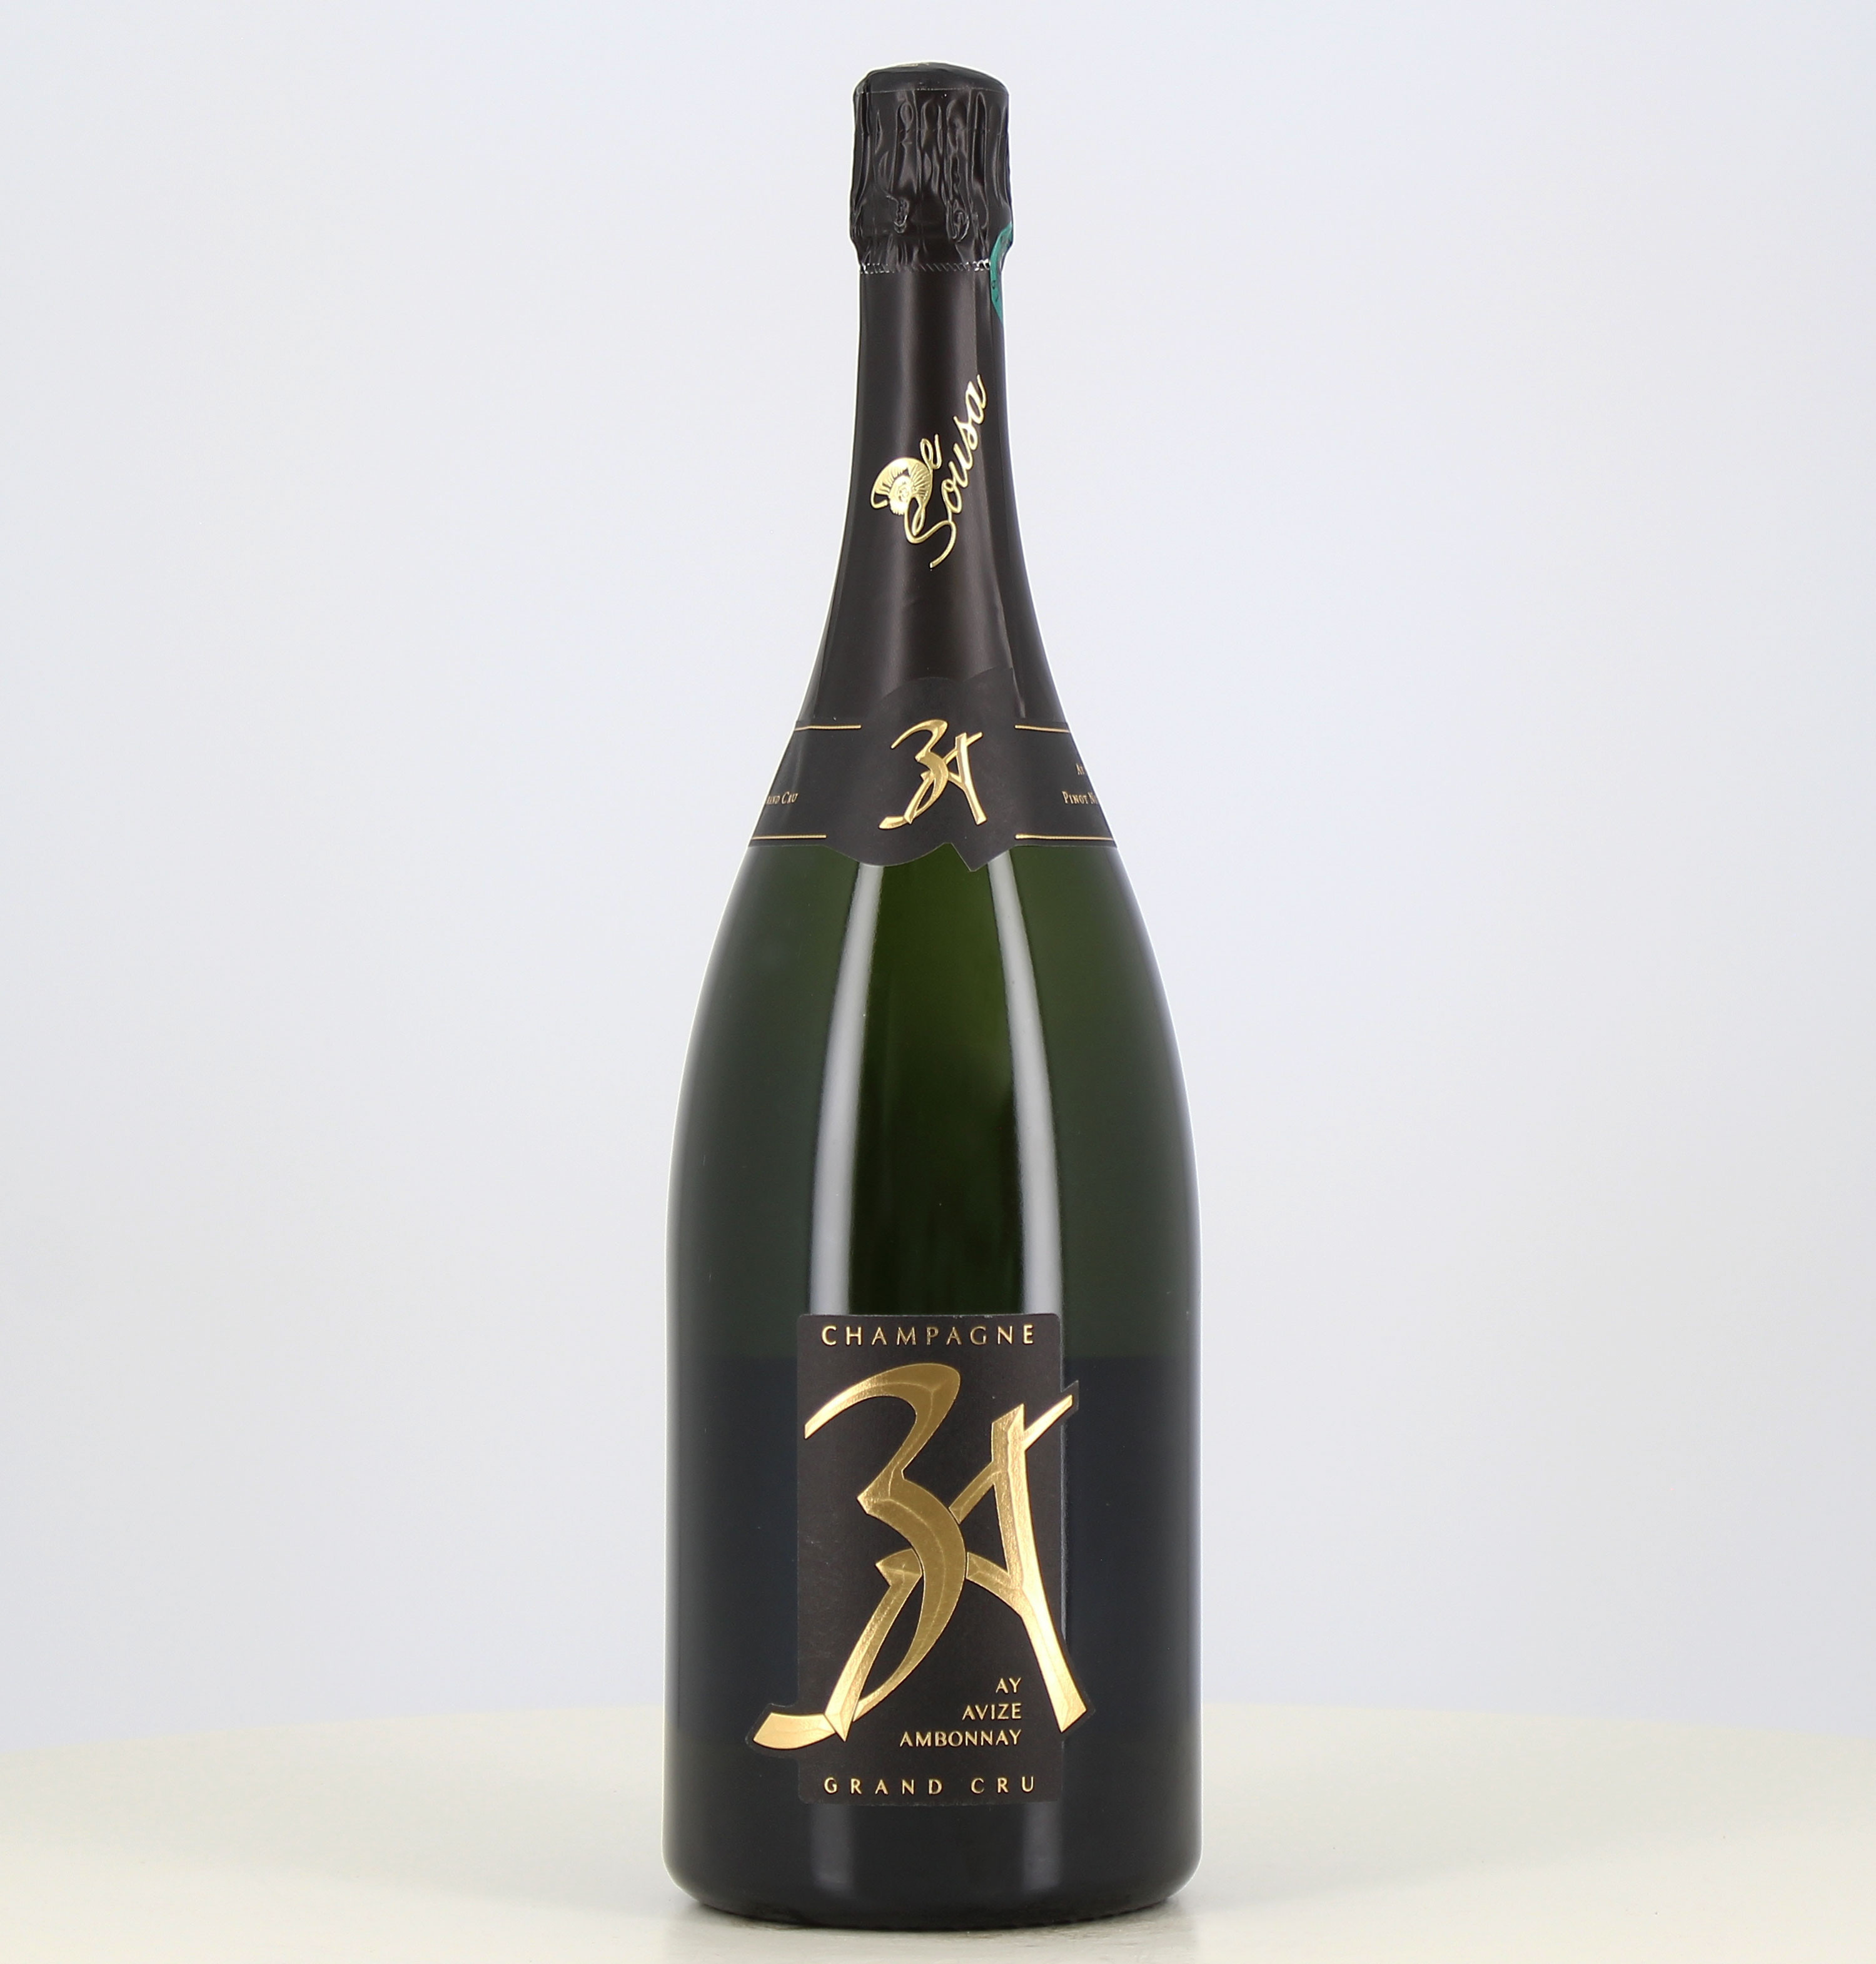 Magnum of Champagne Cuvée 3A grand cru extra brut De Sousa 